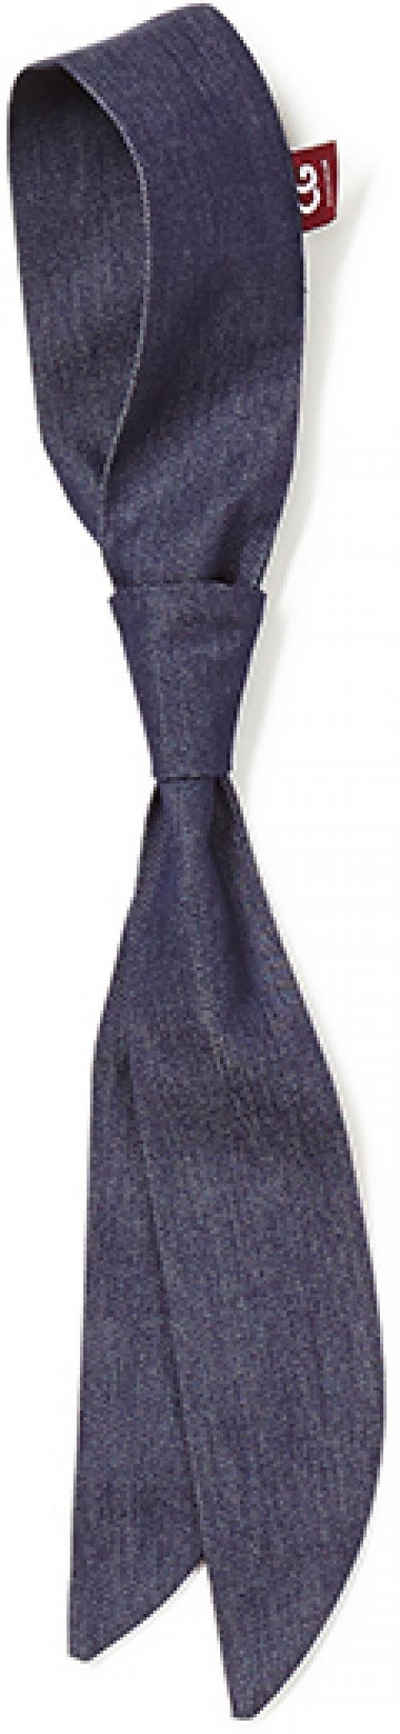 CG Workwear Krawatte Krawatte Atri, Mit Durchziehschlaufe (ohne Binden)